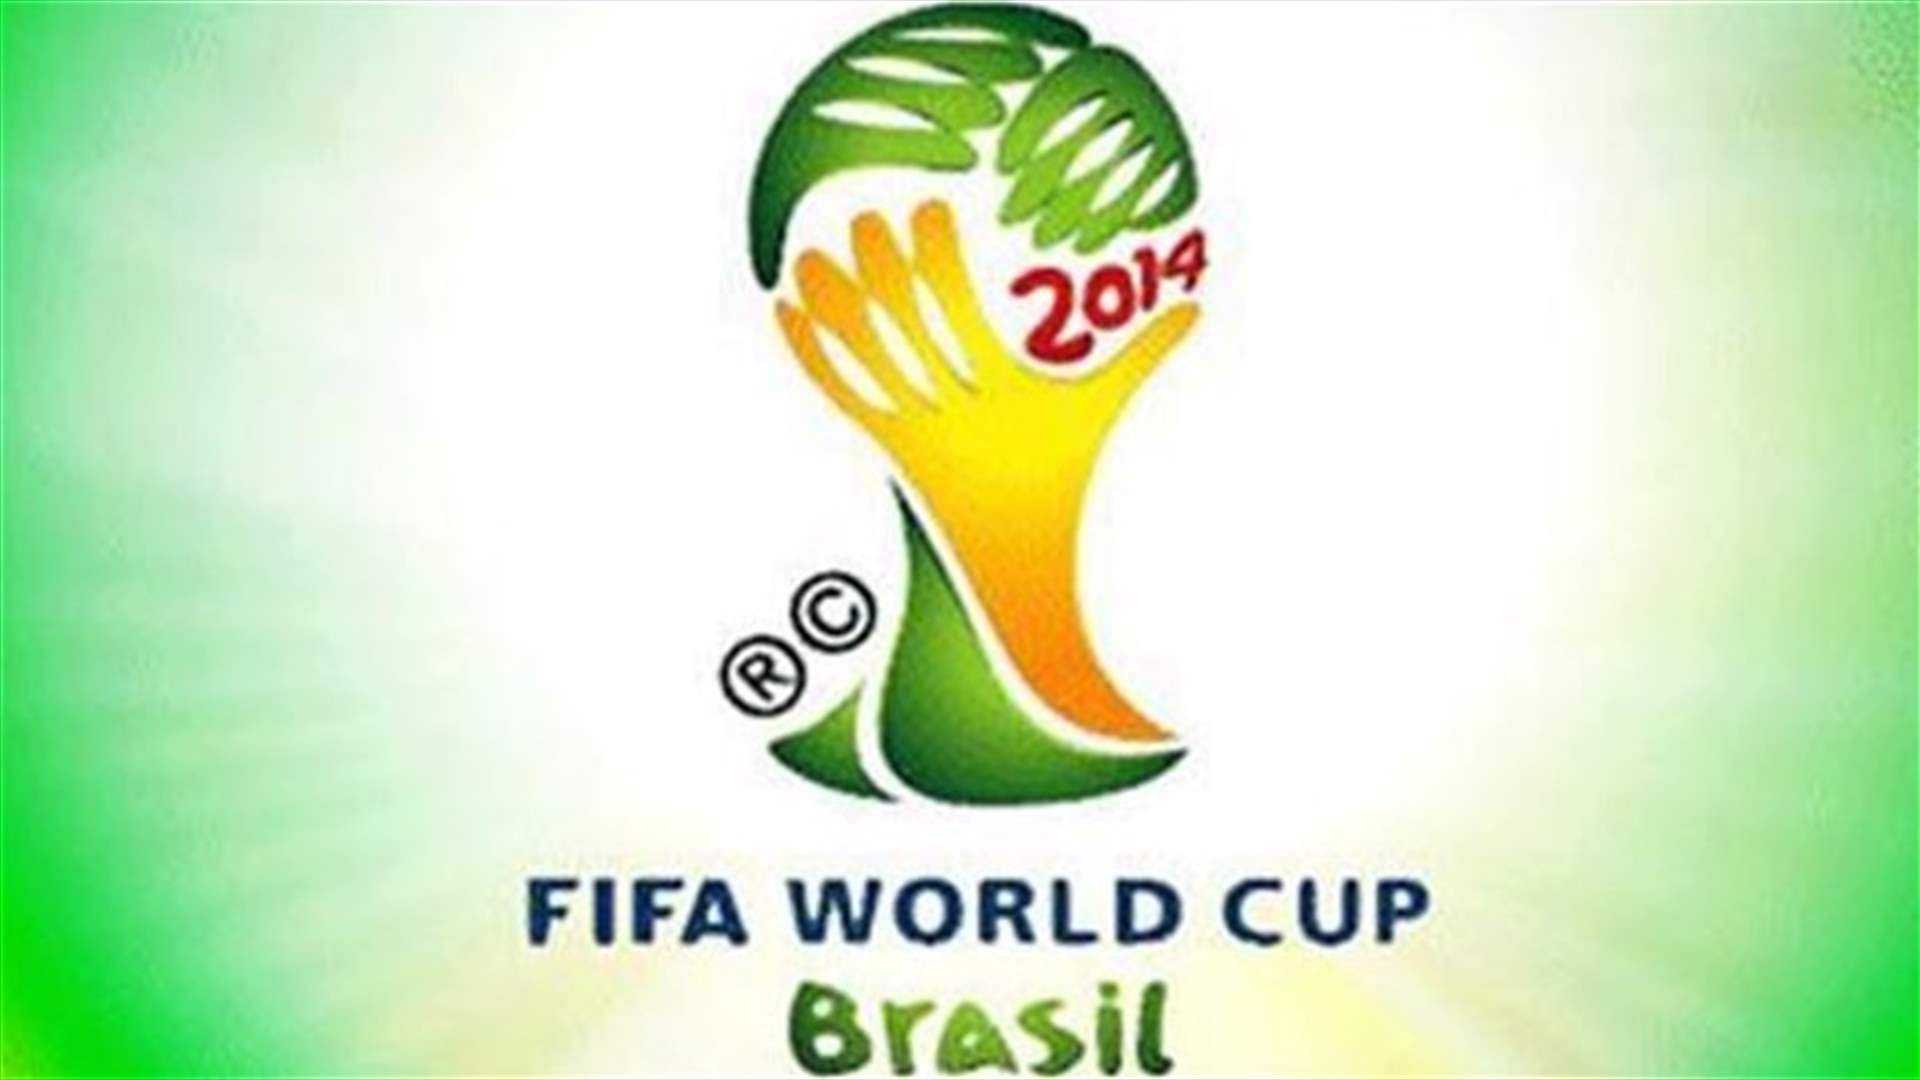 قناة ZDF لن تبث كأس العالم في الشرق الأوسط وشمال أفريقيا